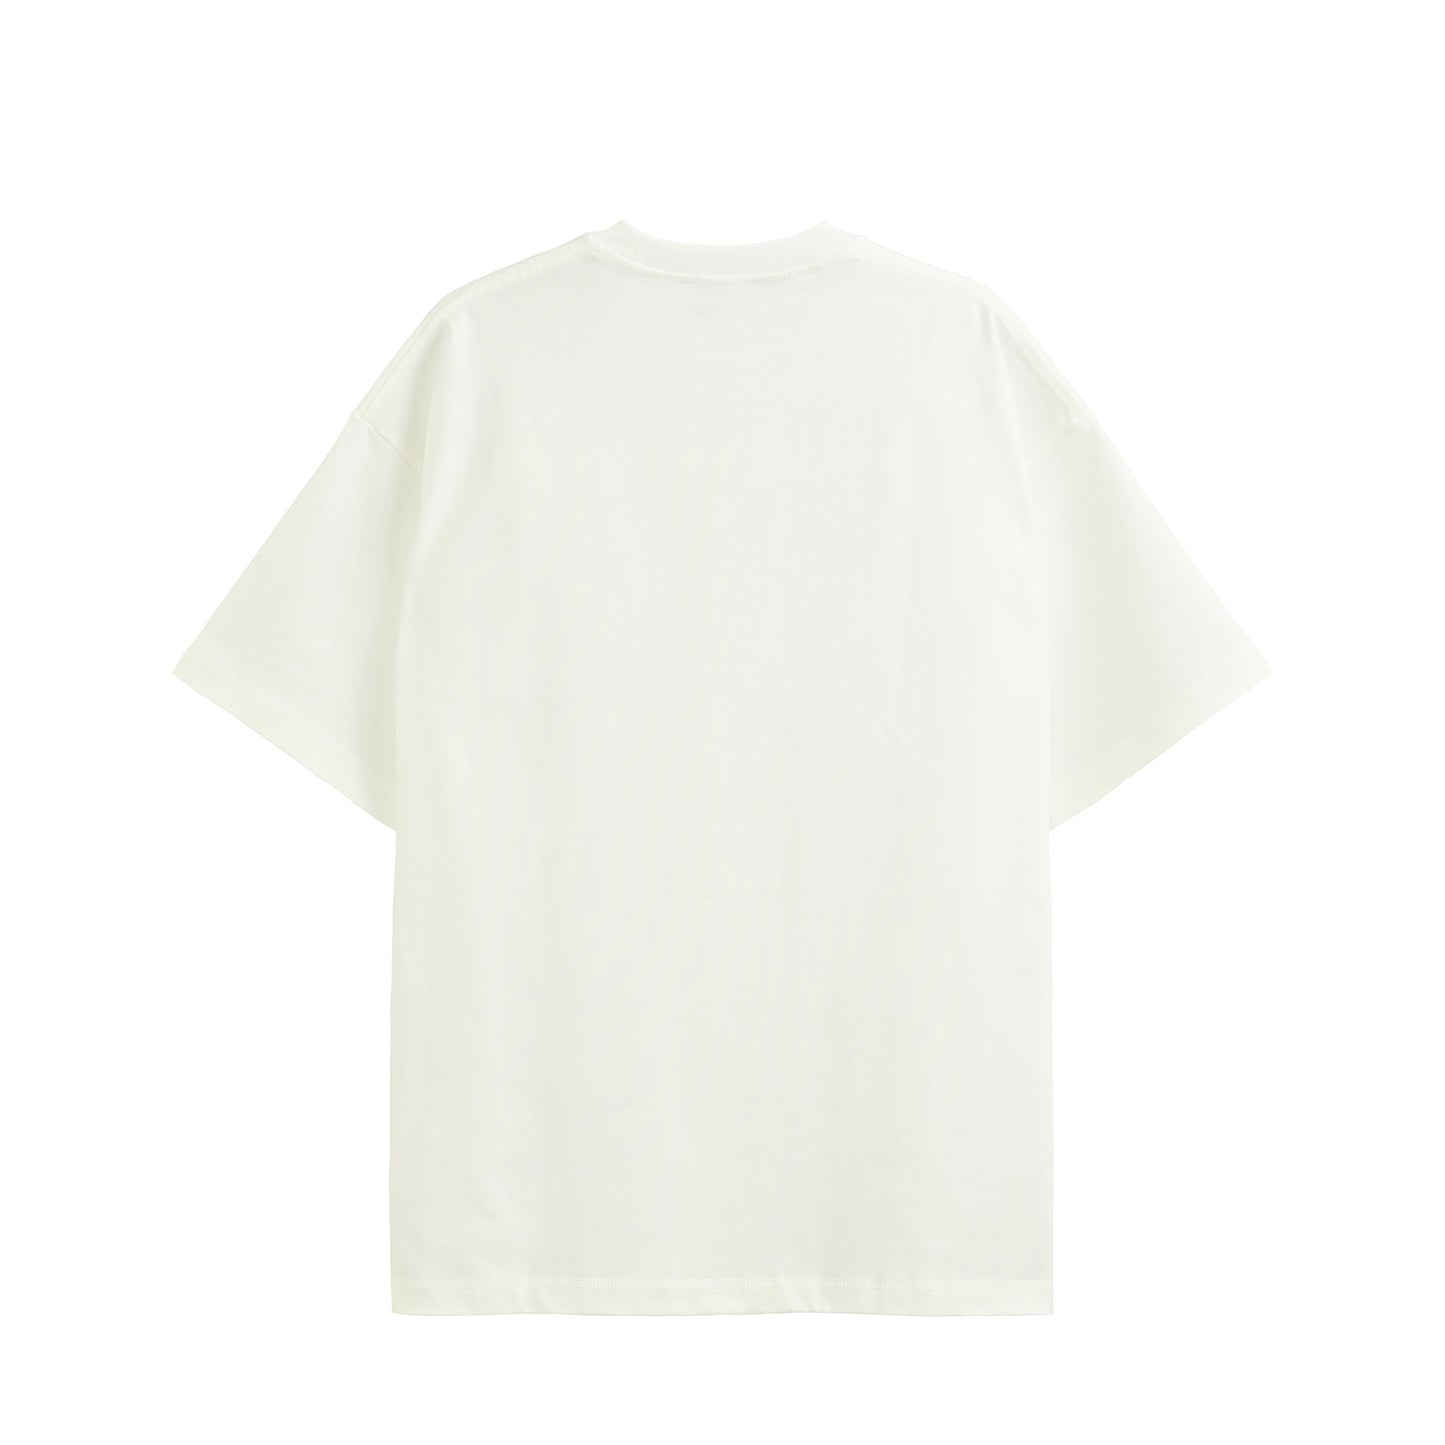 11.3oz Heavyweight T-shirt  "Negligence" Yamagata's Collection